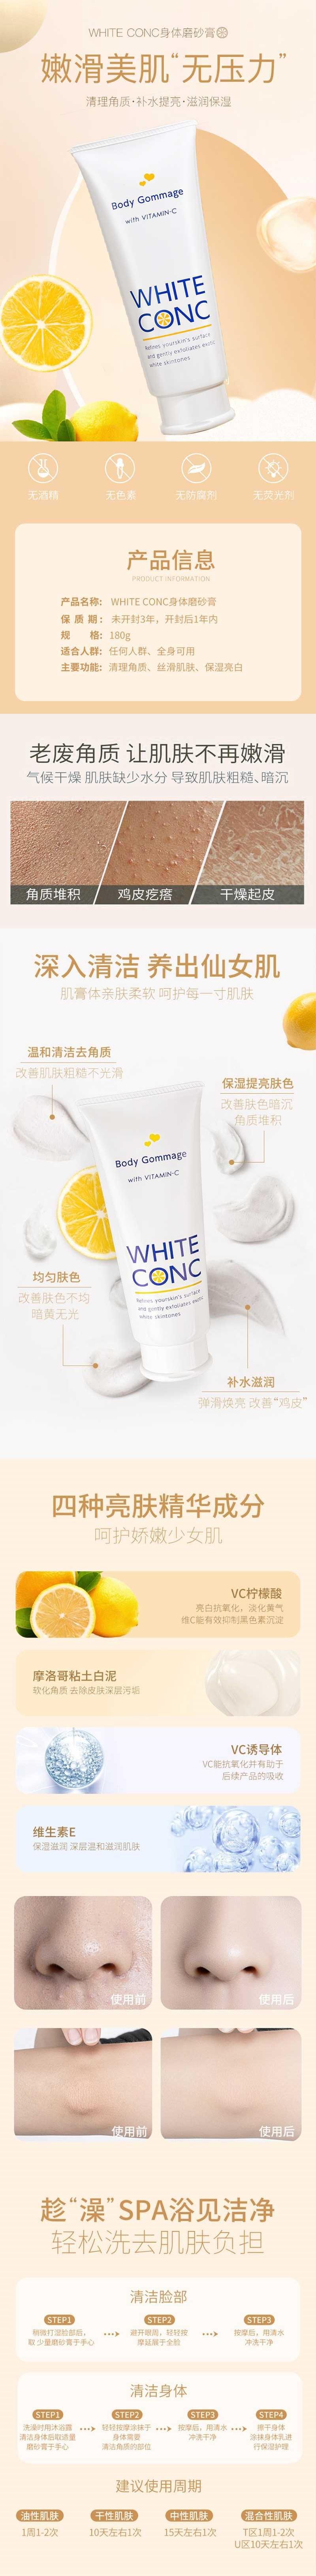 【日本直效郵件】WHITE CONC 去雞皮去毛囊角質死皮 全身VC美白身體磨砂膏 180g